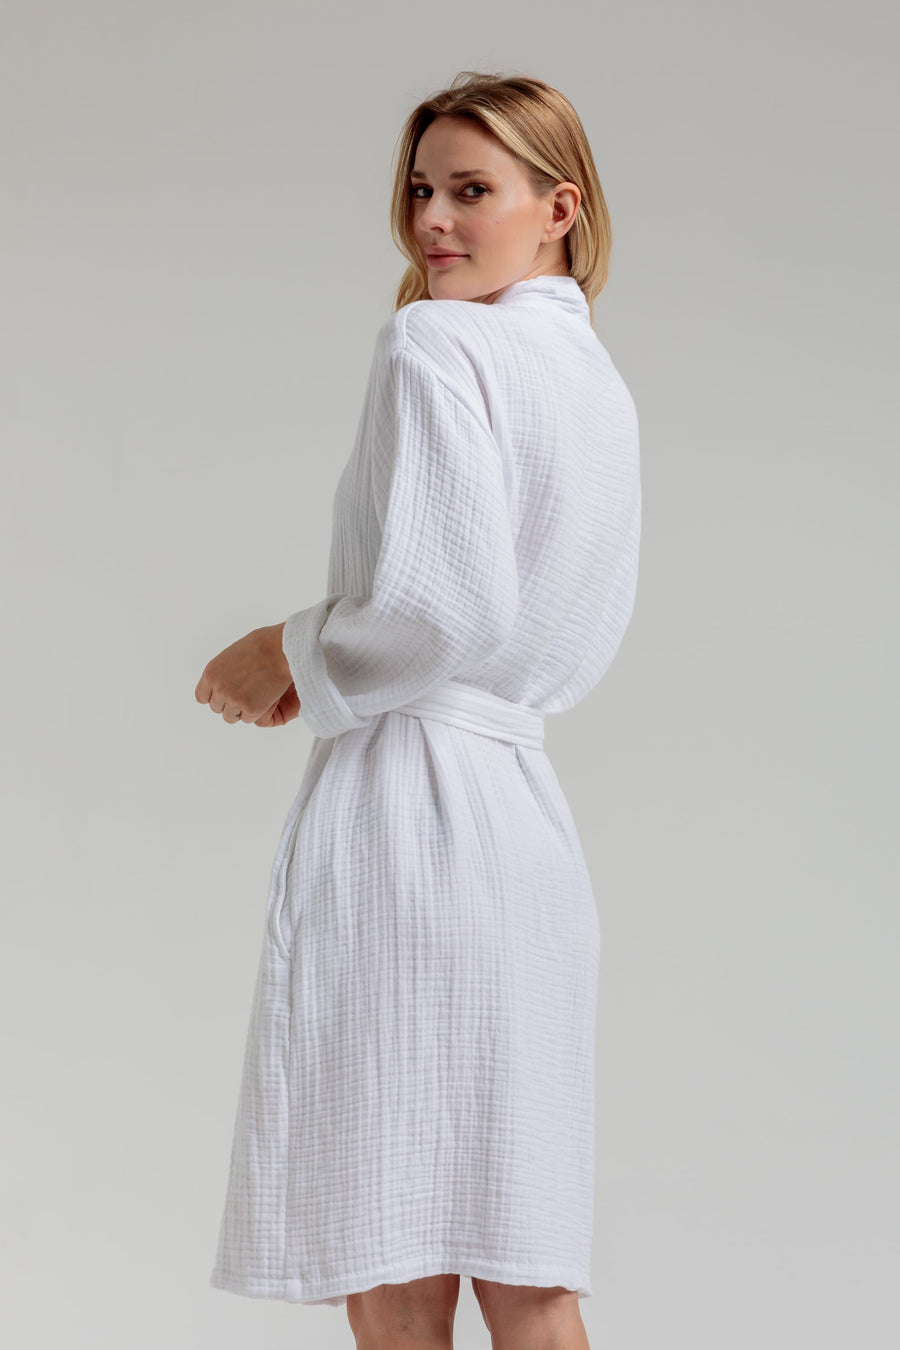 Merida Gauze Cotton Robe - White